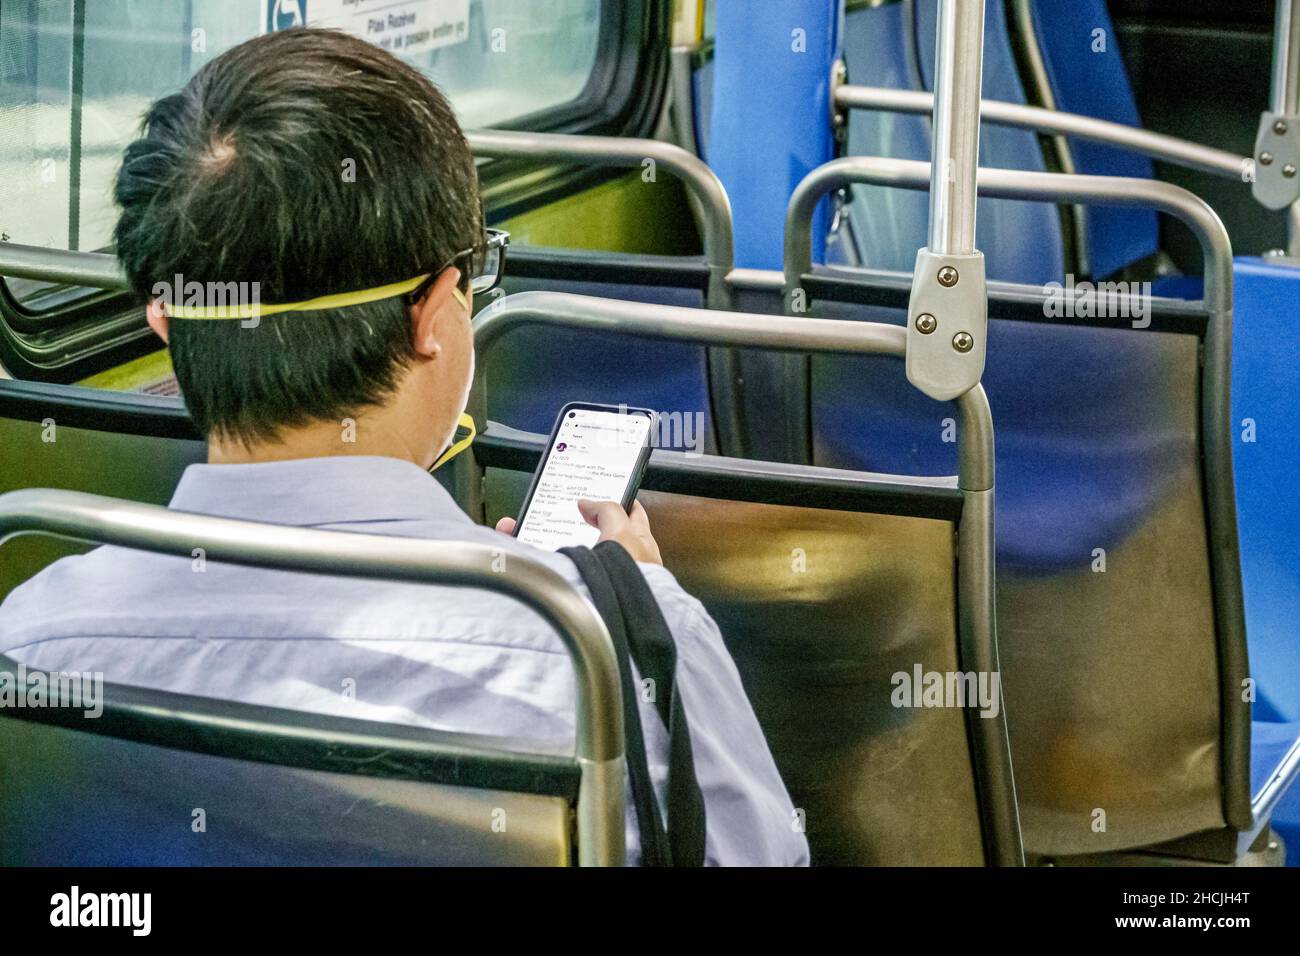 Miami Florida Miami-Dade Metrobus an Bord Passagier Fahrer trägt Gesichtsmaske Mann im Innenbus öffentlichen Verkehrsmitteln mit Lesung Texting messag Stockfoto